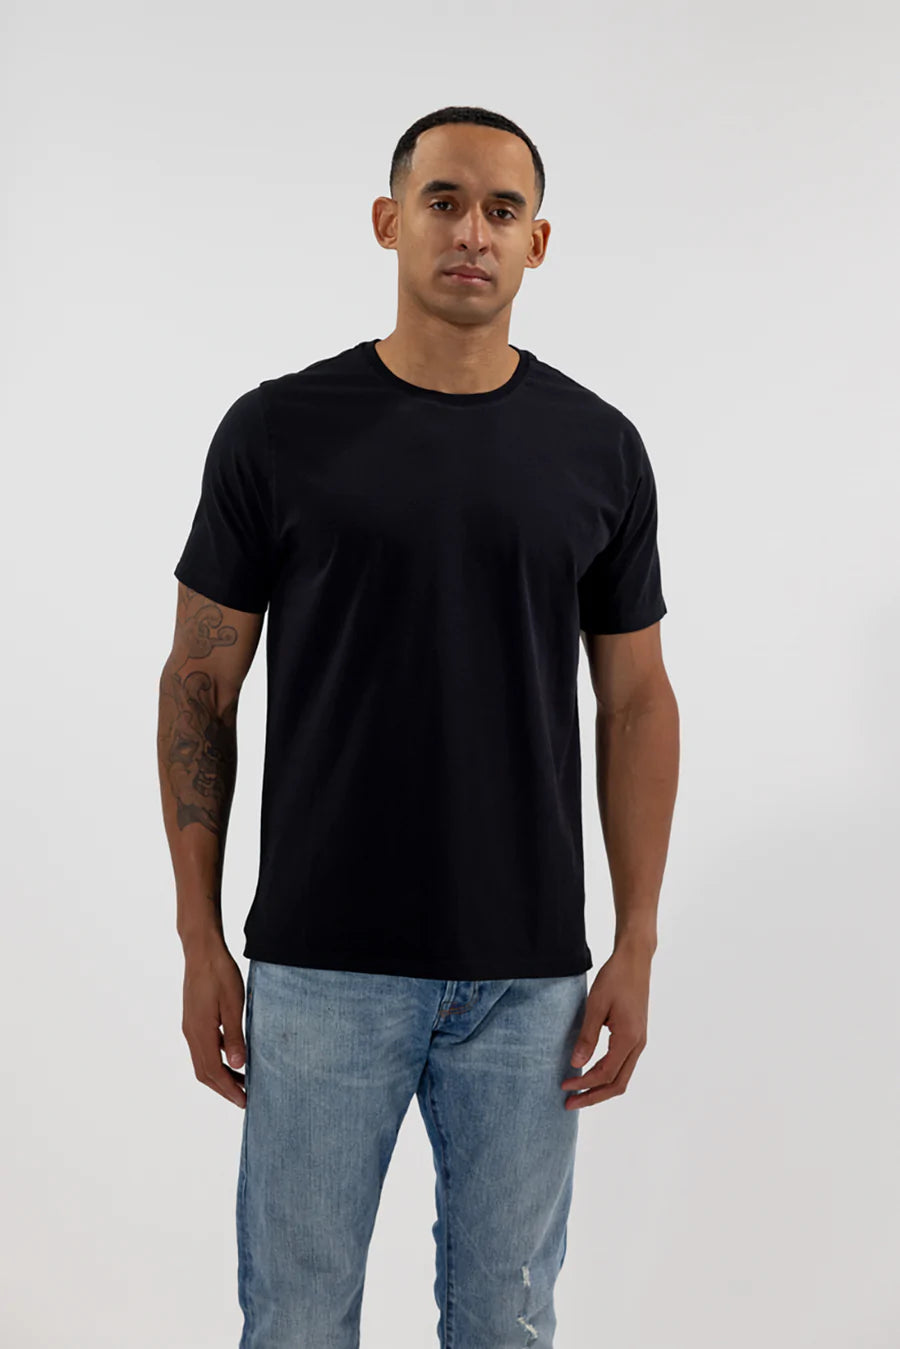 Easy Mondays Crew Neck Cotton T-Shirt-Men&#39;s T-Shirts-Black-S-Yaletown-Vancouver-Surrey-Canada